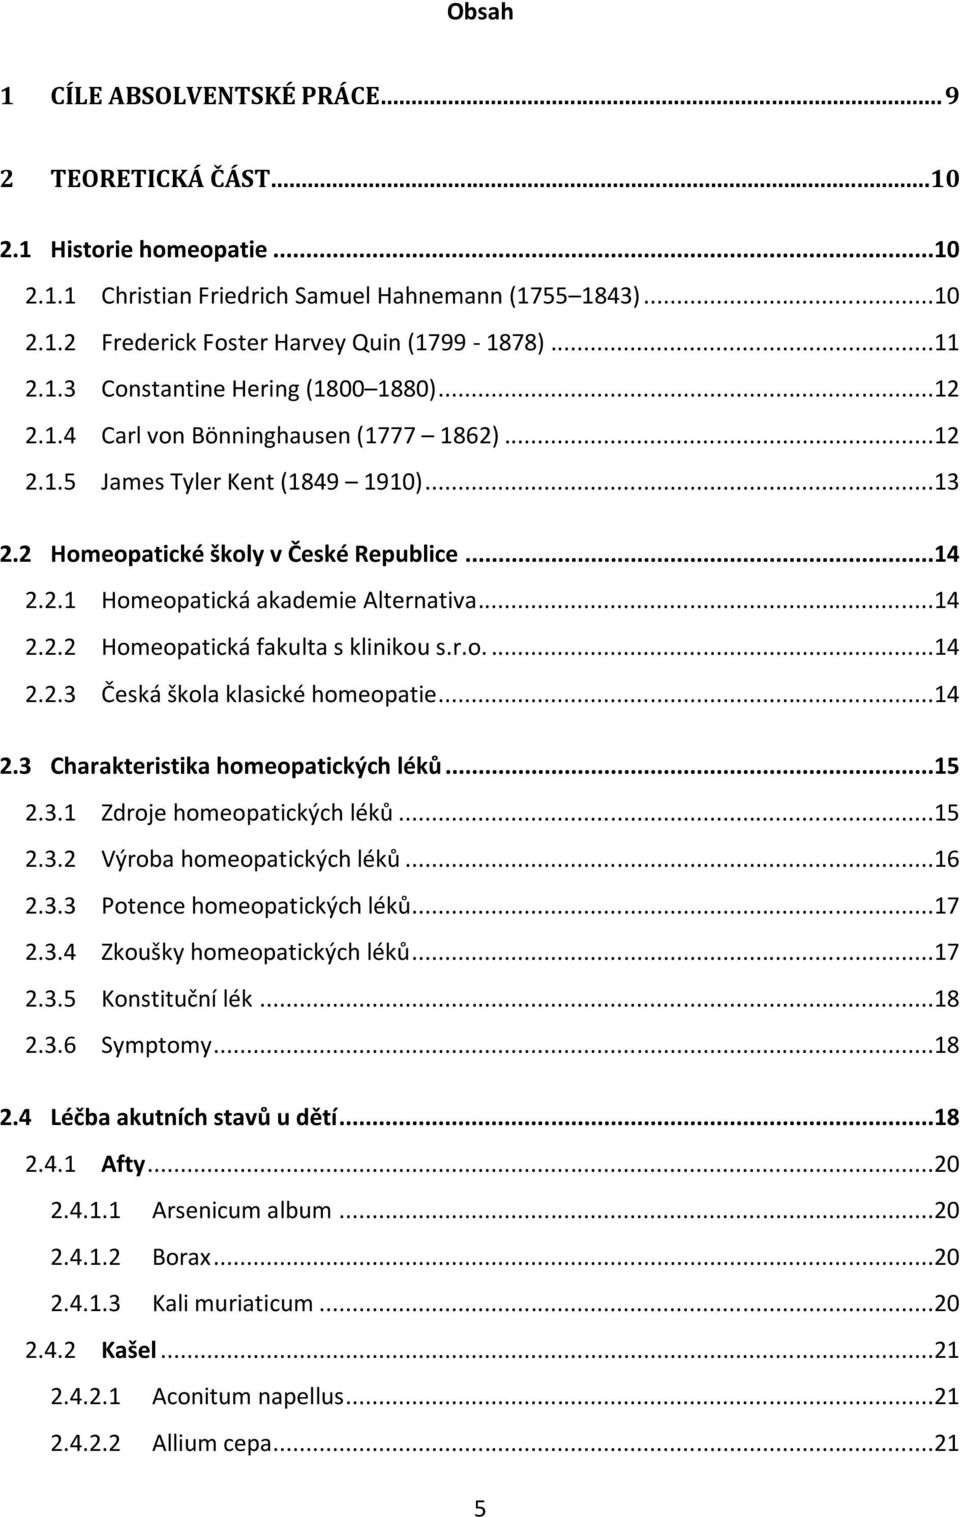 ..14 2.2.2 Homeopatická fakulta s klinikou s.r.o....14 2.2.3 Česká škola klasické homeopatie...14 2.3 Charakteristika homeopatických léků...15 2.3.1 Zdroje homeopatických léků...15 2.3.2 Výroba homeopatických léků.